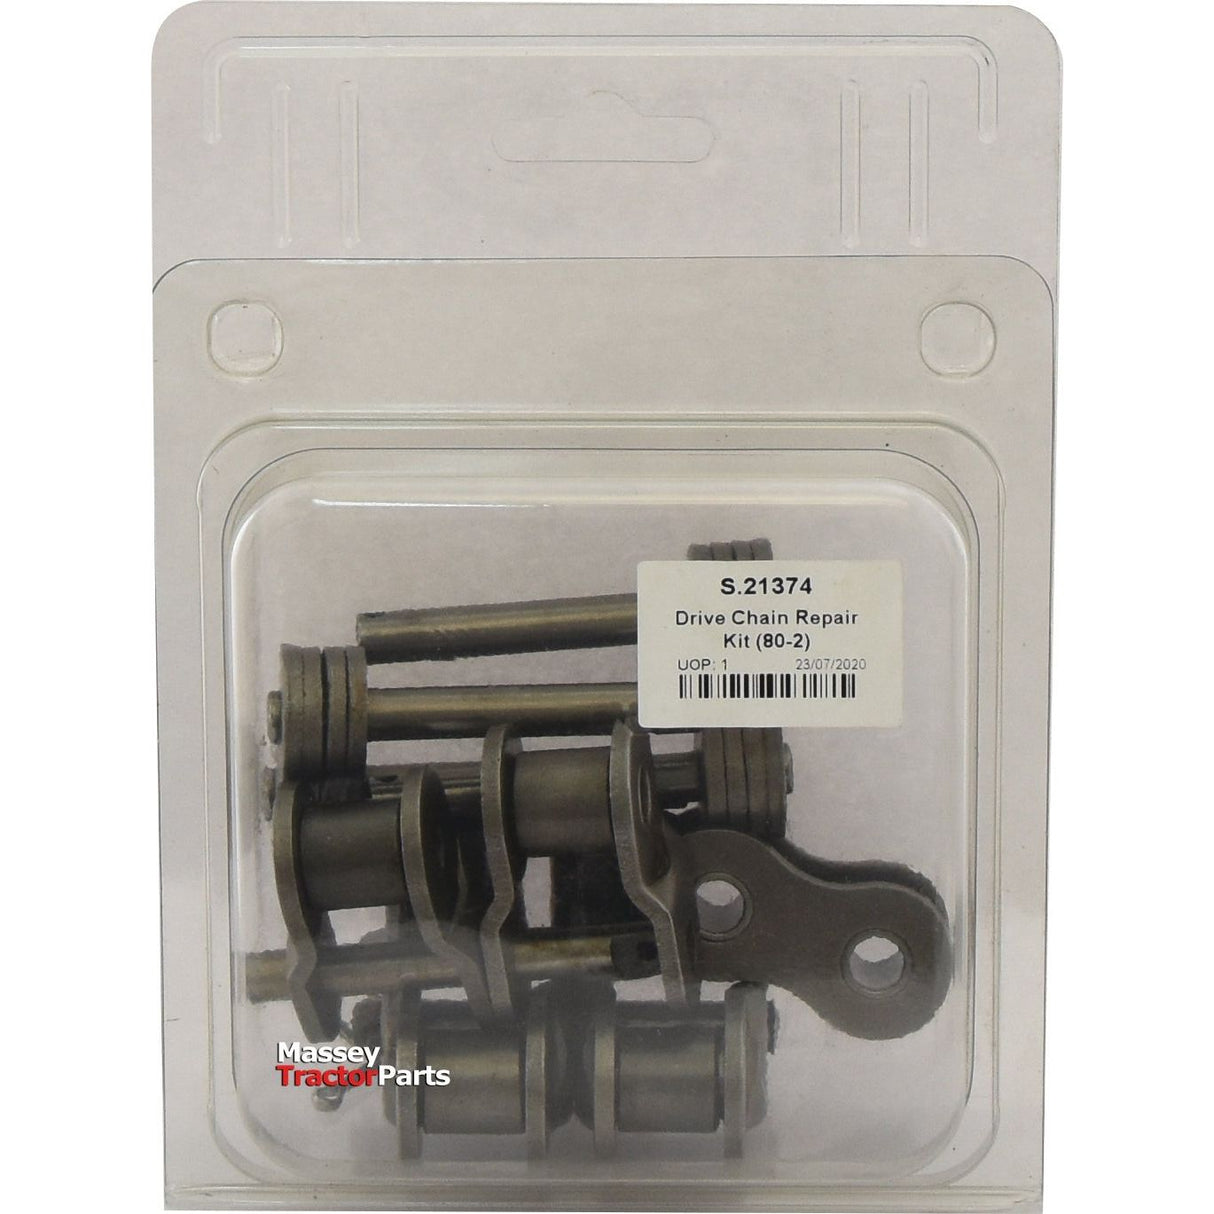 Drive Chain Repair Kit (80-2)
 - S.21374 - Farming Parts